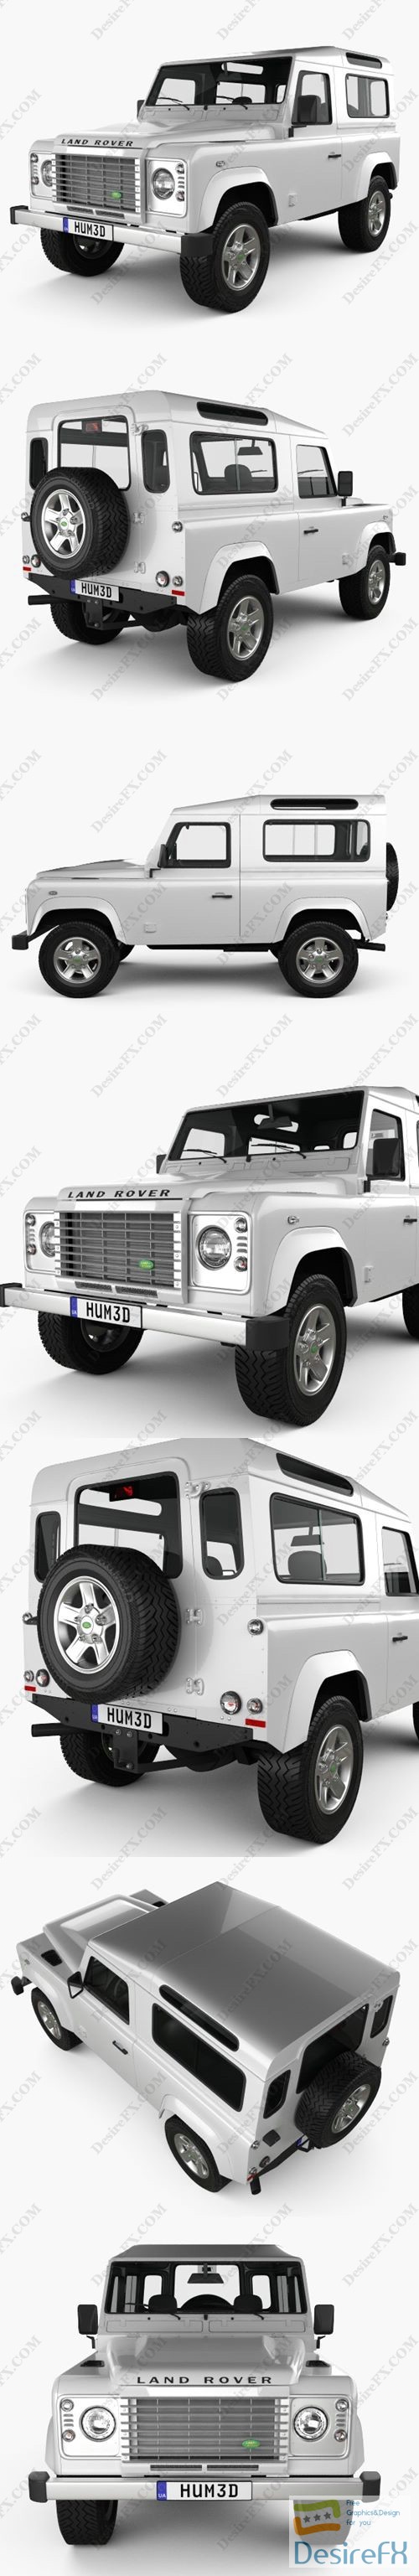 Land Rover Defender 90 Station Wagon 2011 3D Model